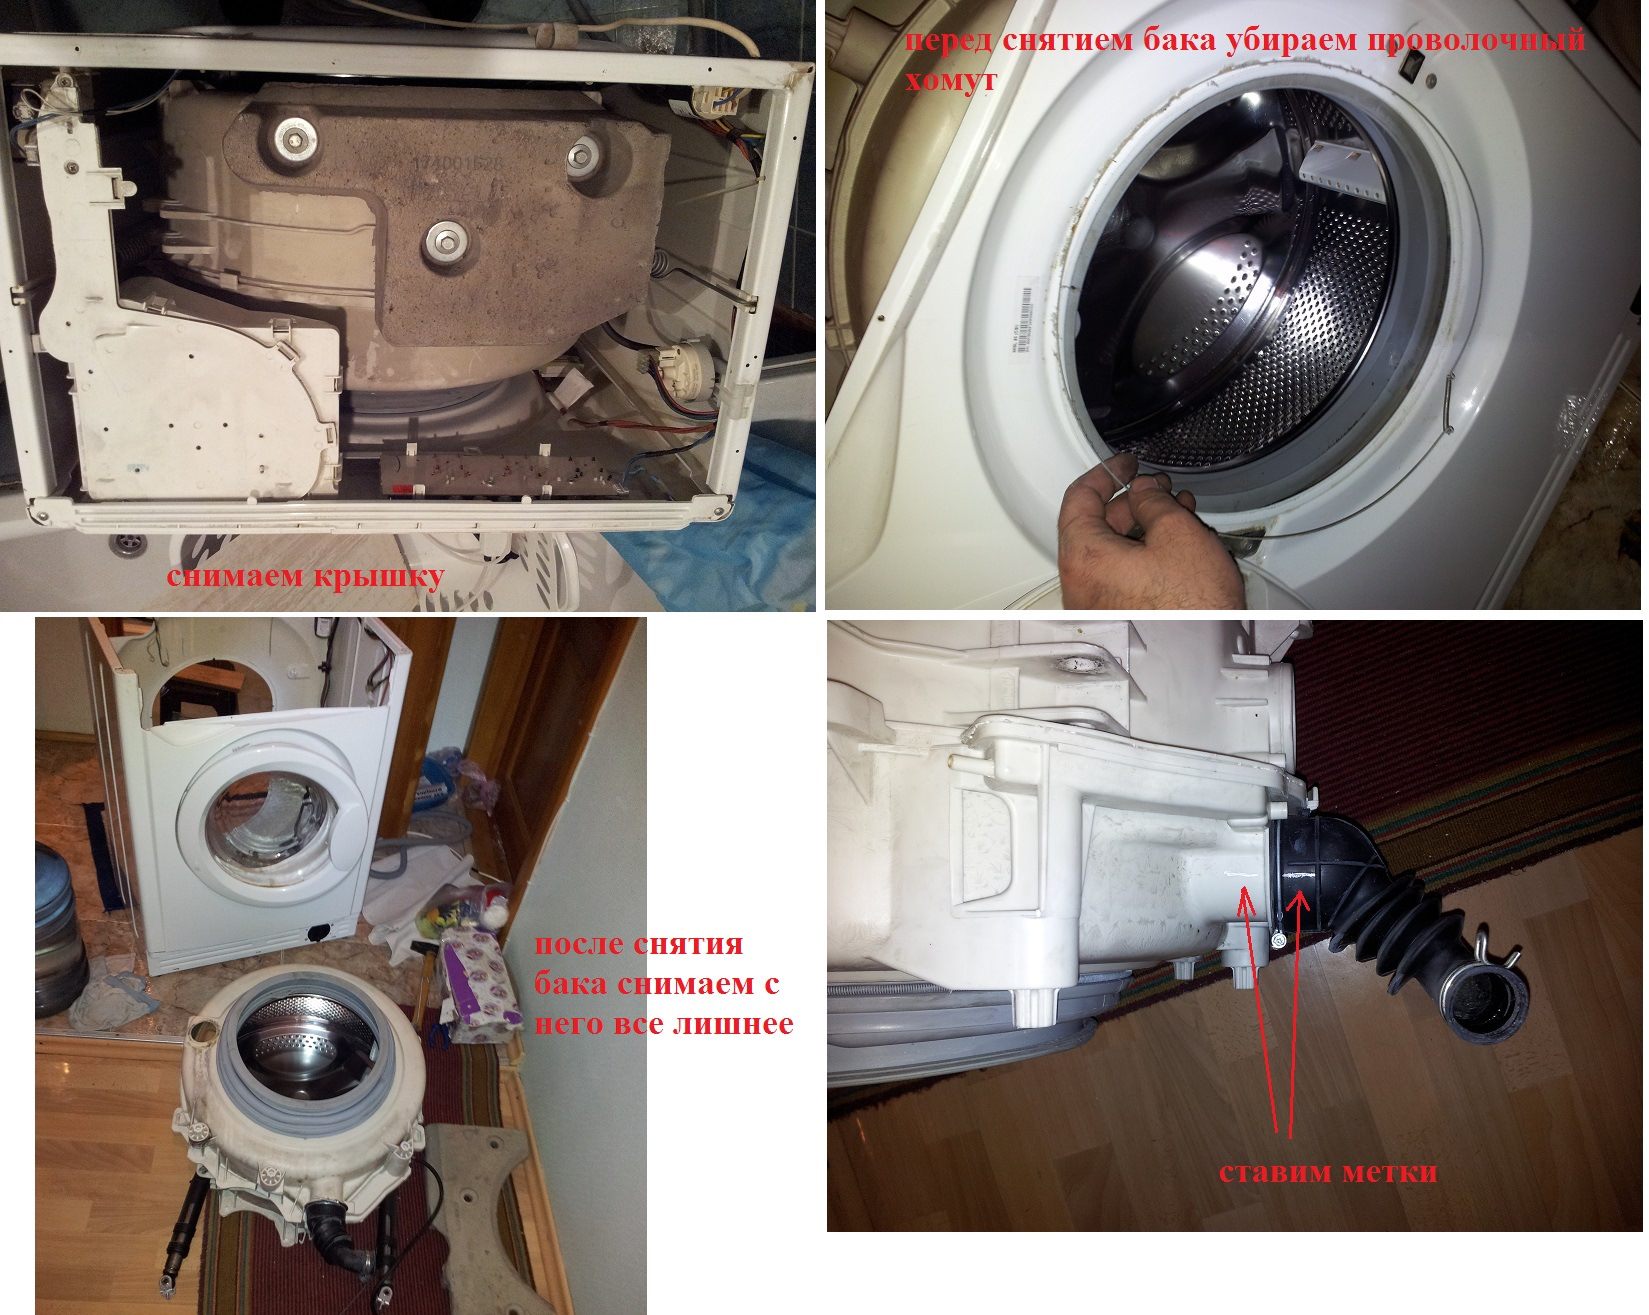 Как снять барабан на стиральной машине - пошаговая инструкция